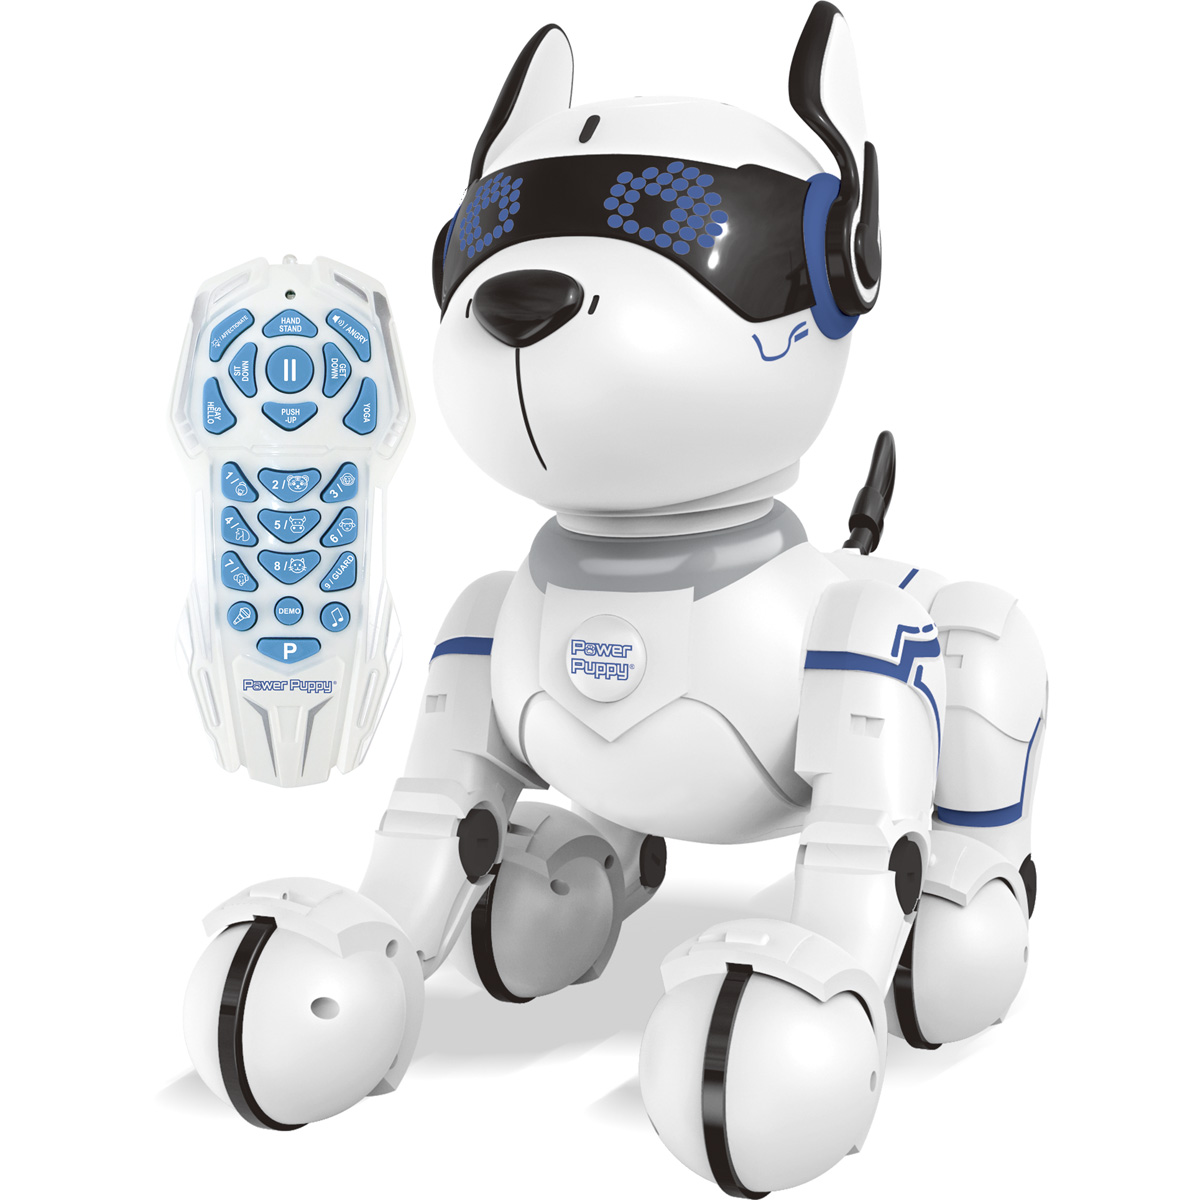 LEXIBOOK POWER PUPPY Programmierbarer Lernroboter, Schwarz/Weiß Roboterhund